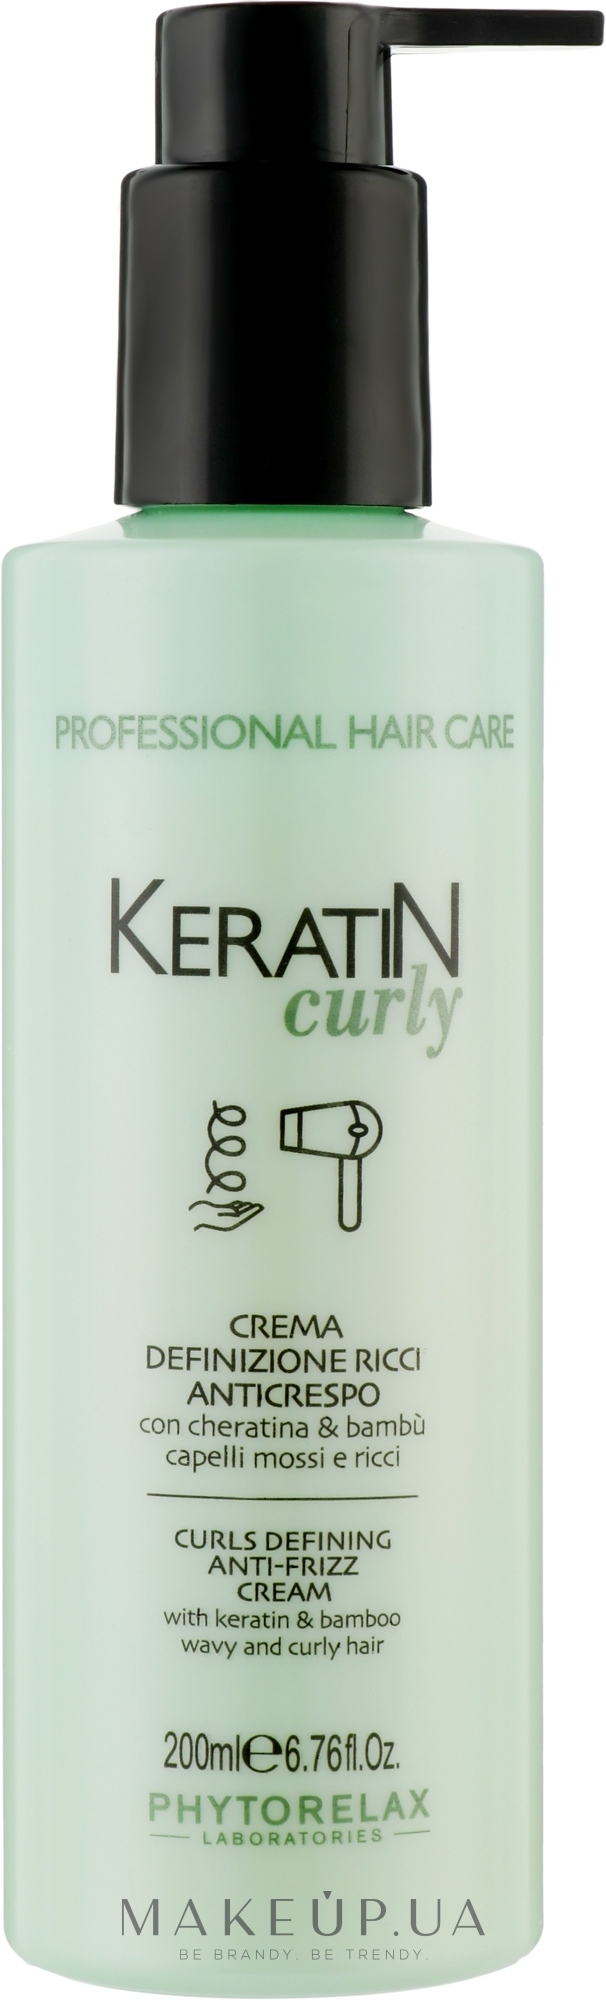 Крем для розгладження кучерявого волосся - Phytorelax Laboratories Keratin Curly Curls Defining Anti-Frizz Cream — фото 200ml